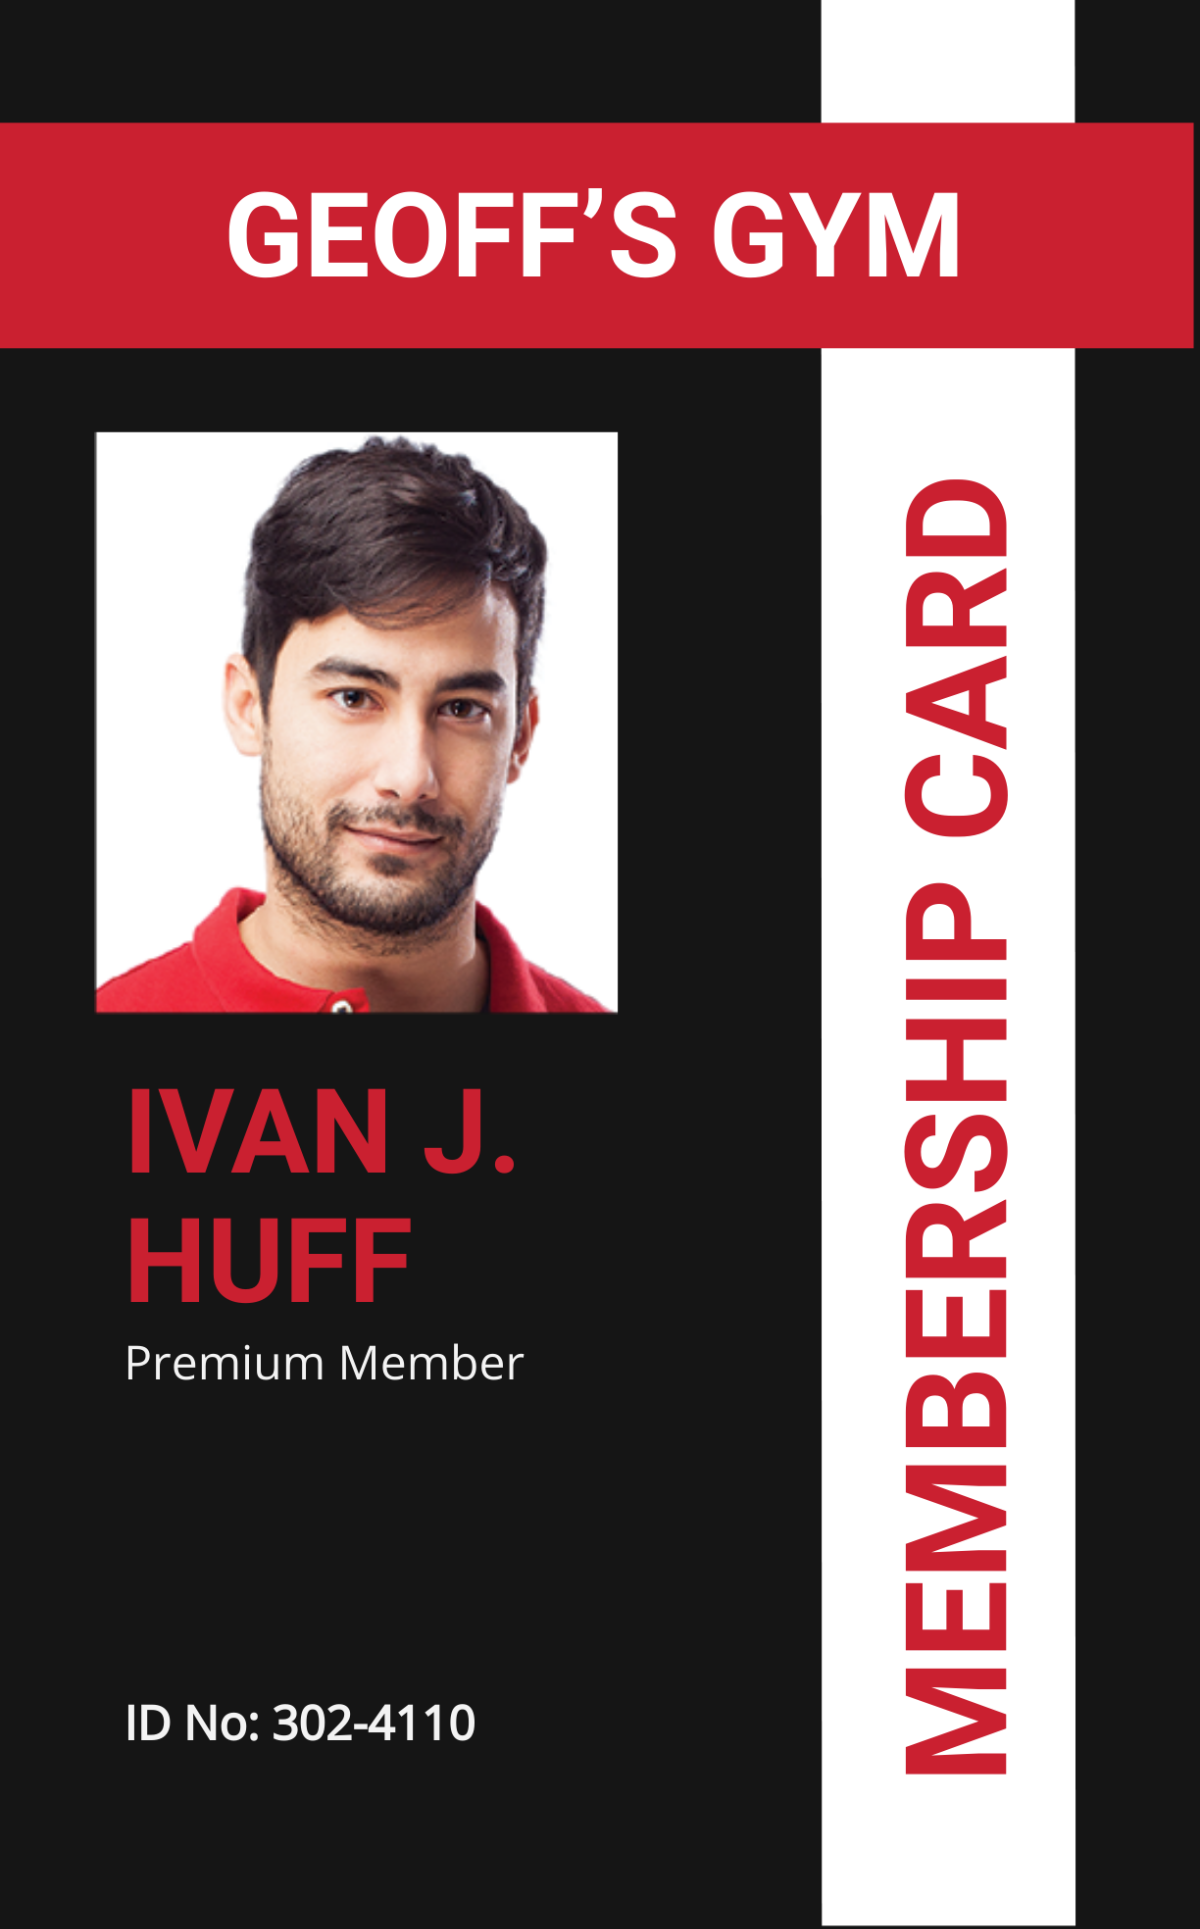 Membership ID card template